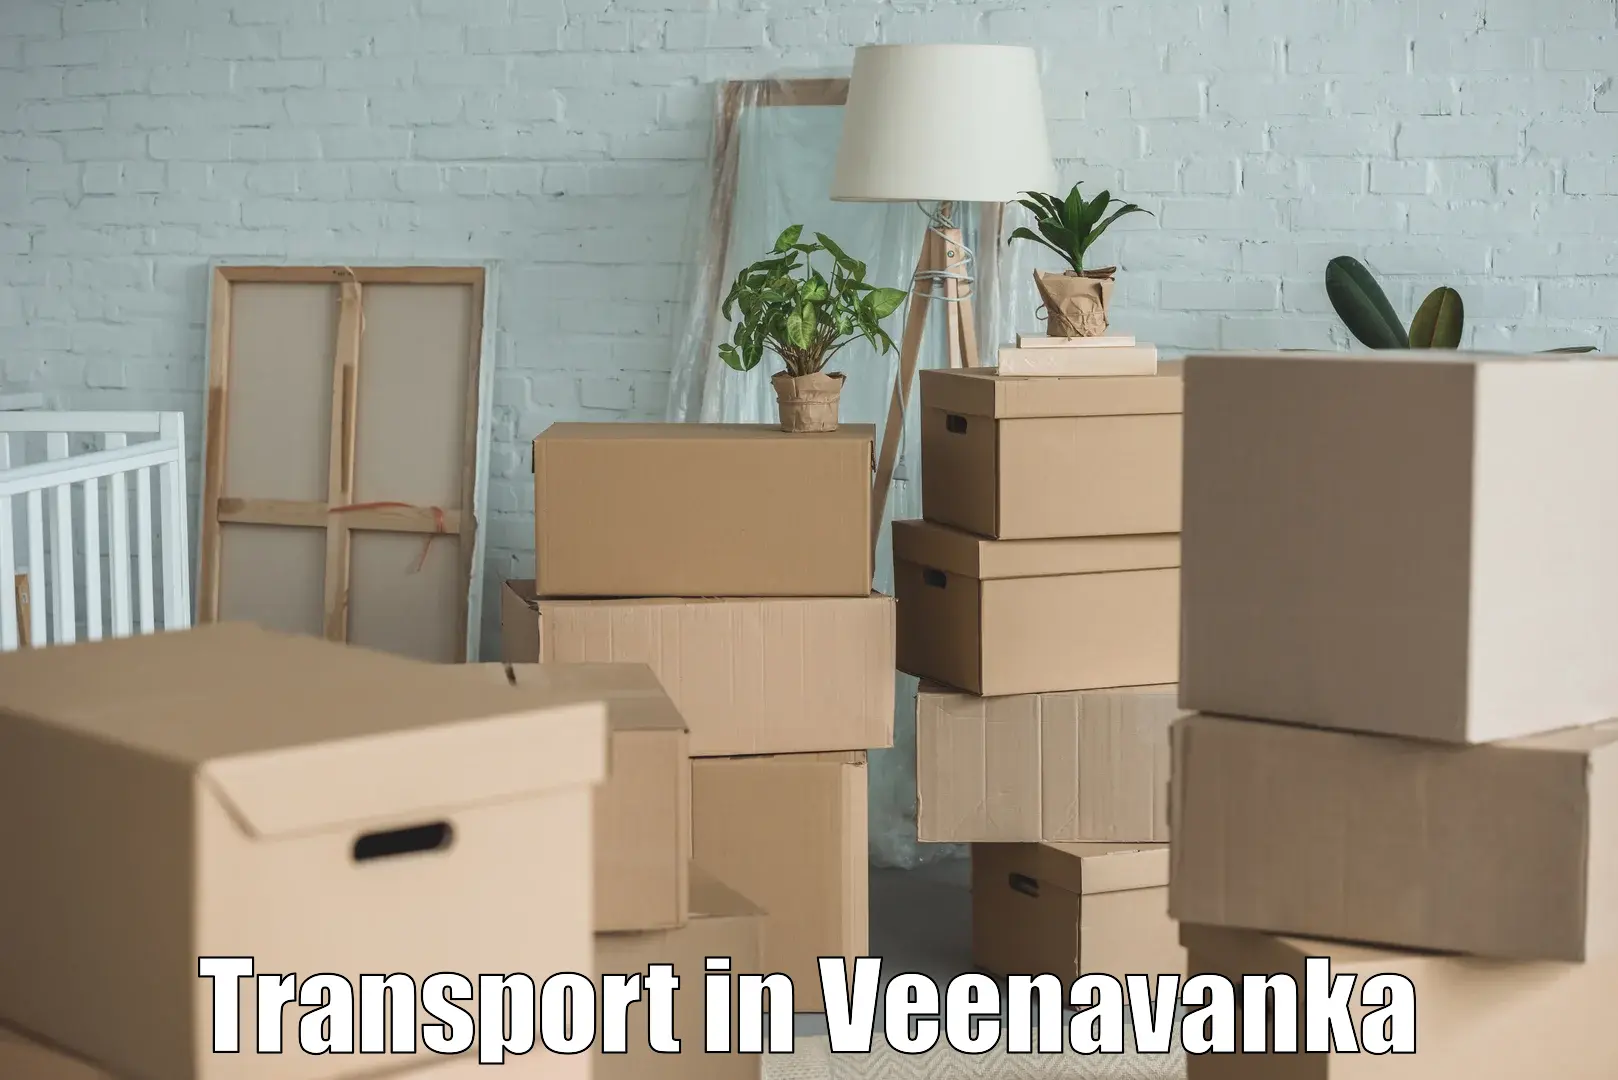 Online transport booking in Veenavanka